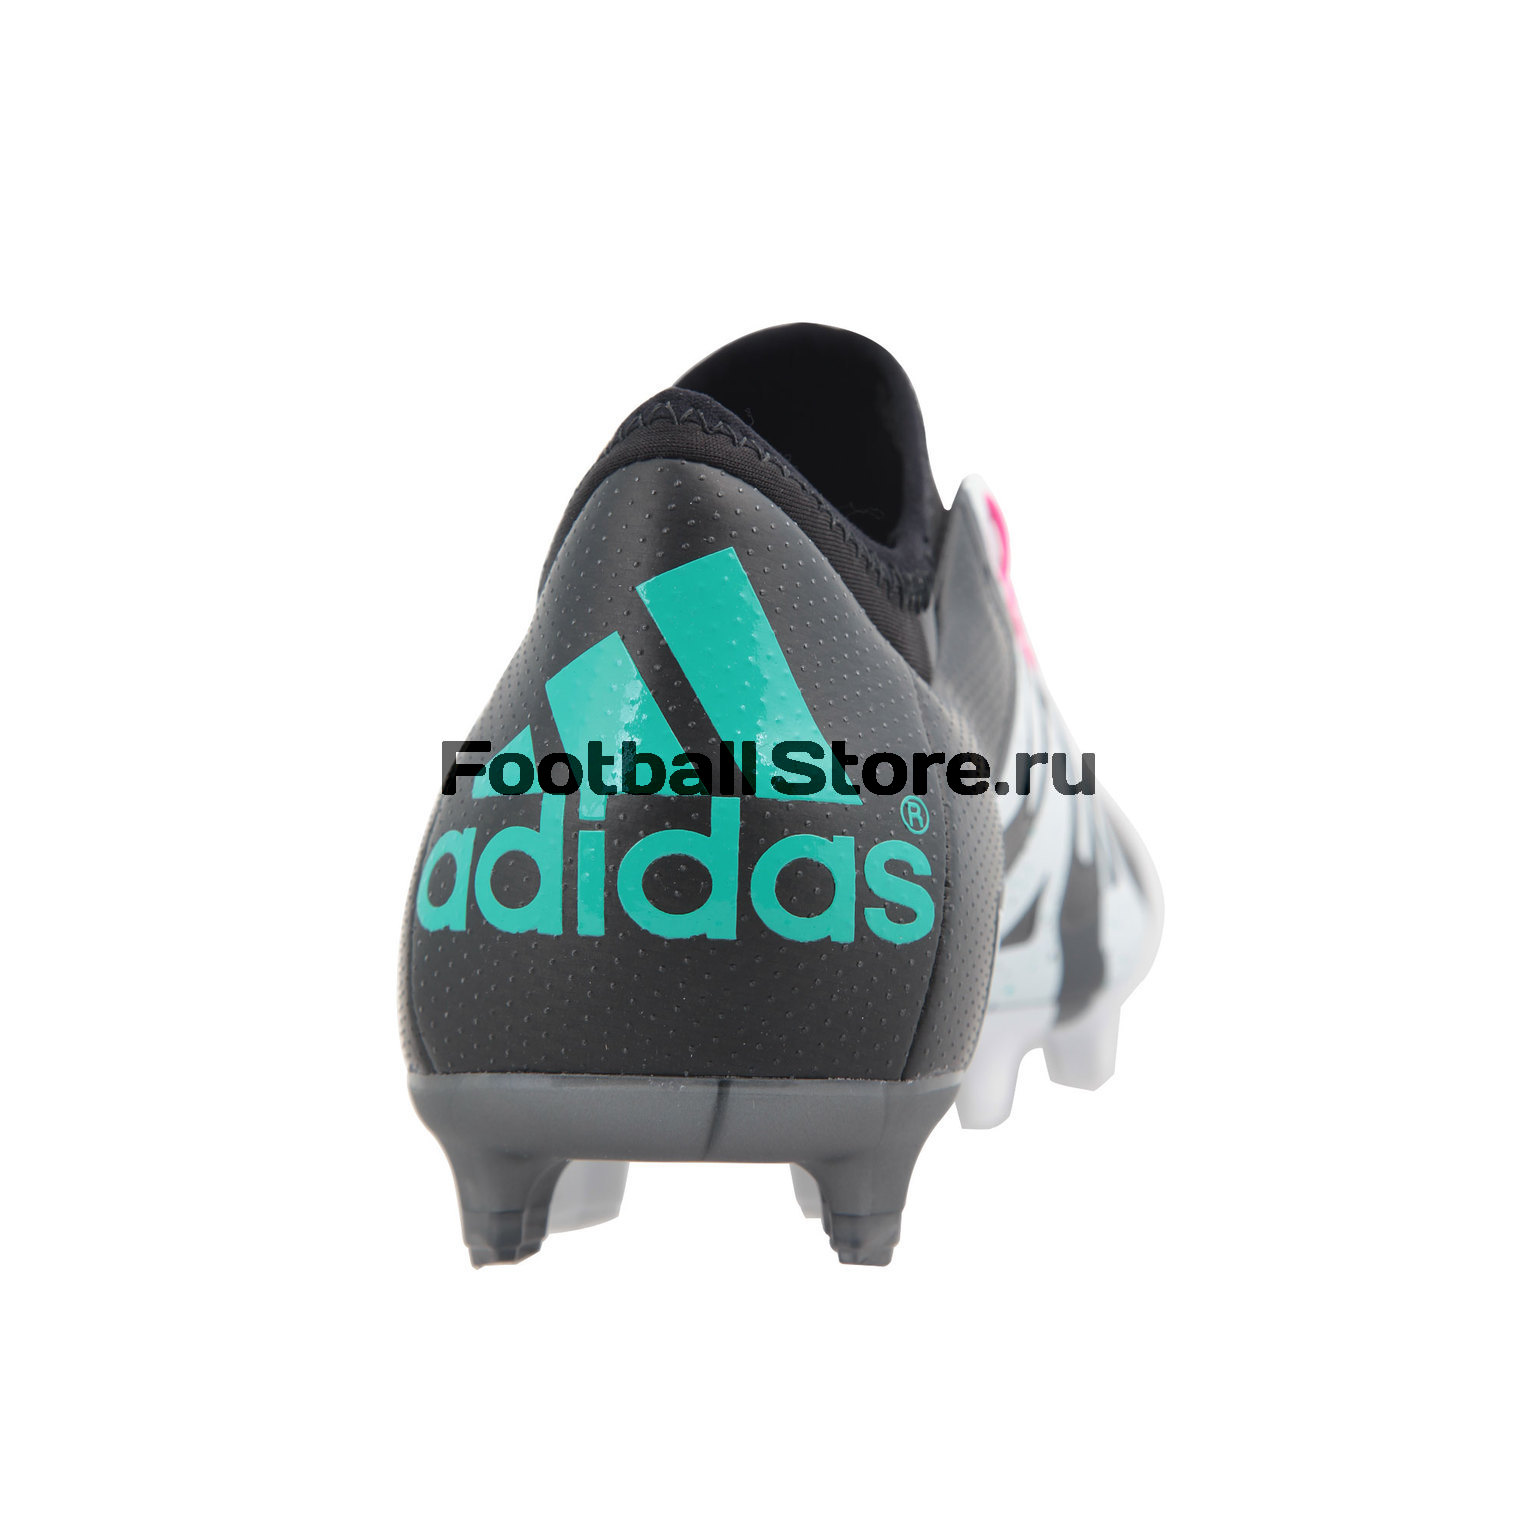 Бутсы Adidas X 15.1 FG/AG – купить бутсы магазине цена, фото, отзывы